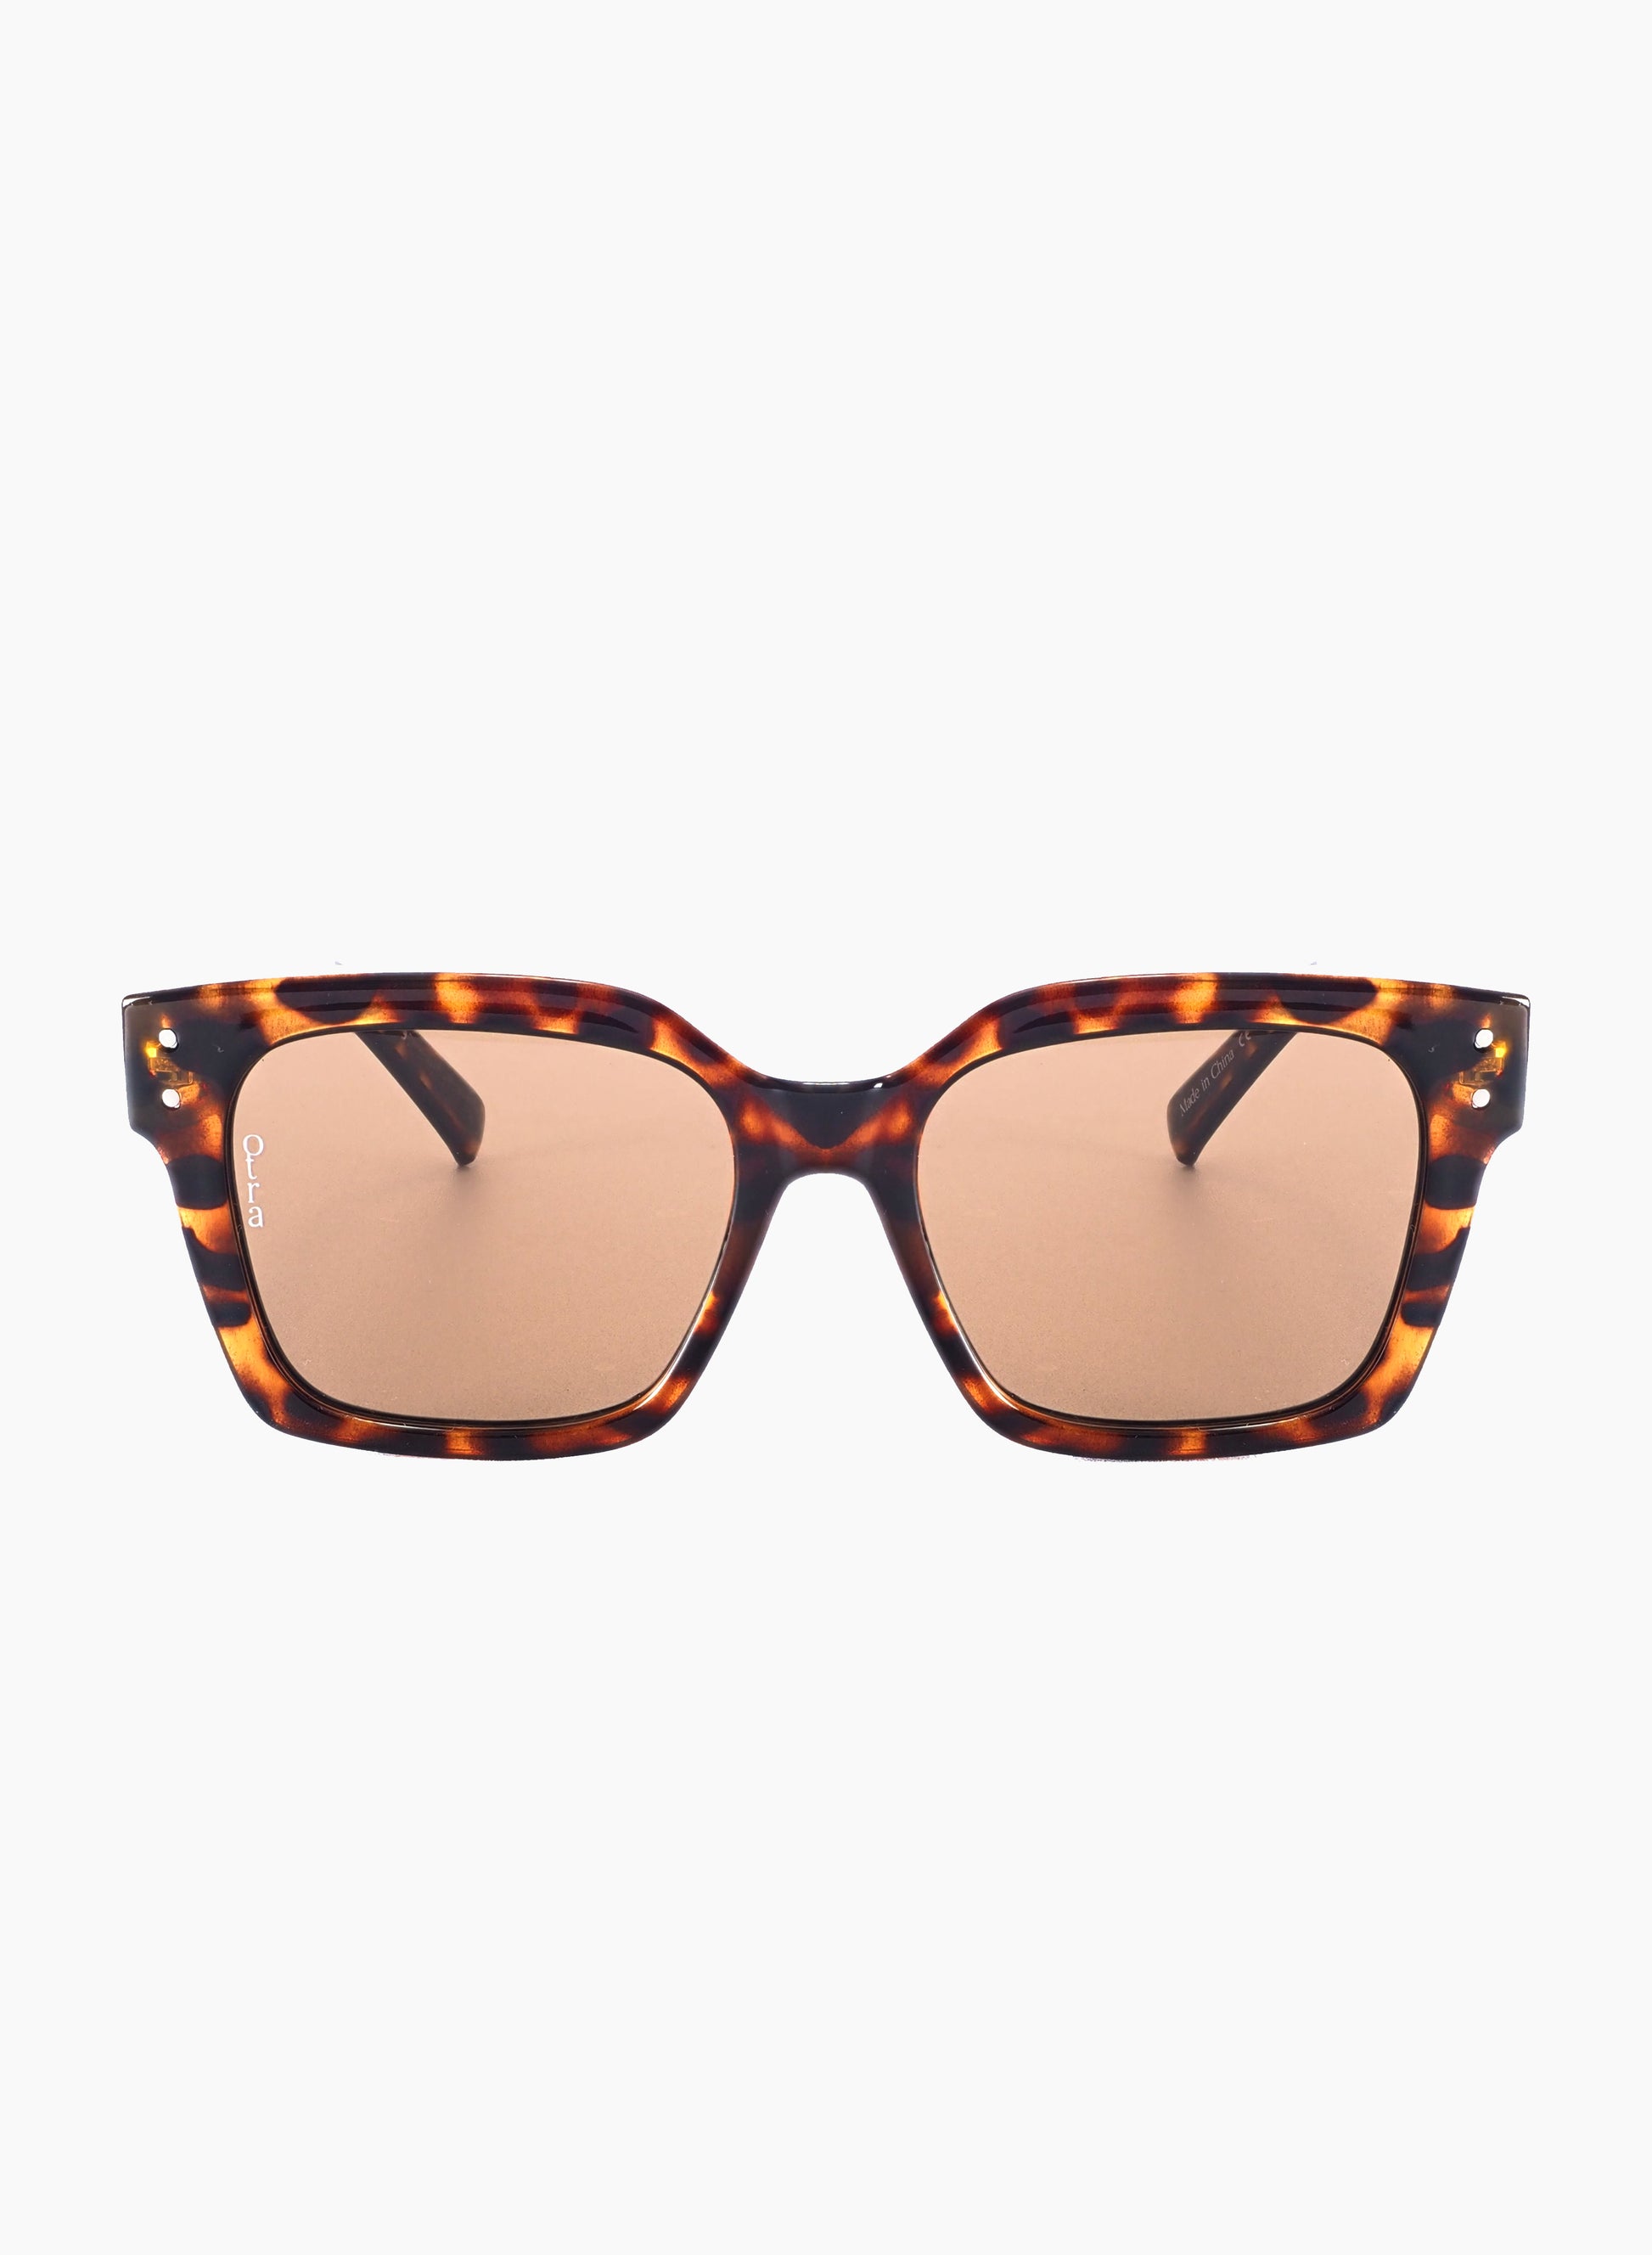 ORA sunglasses in brown tortoiseshell